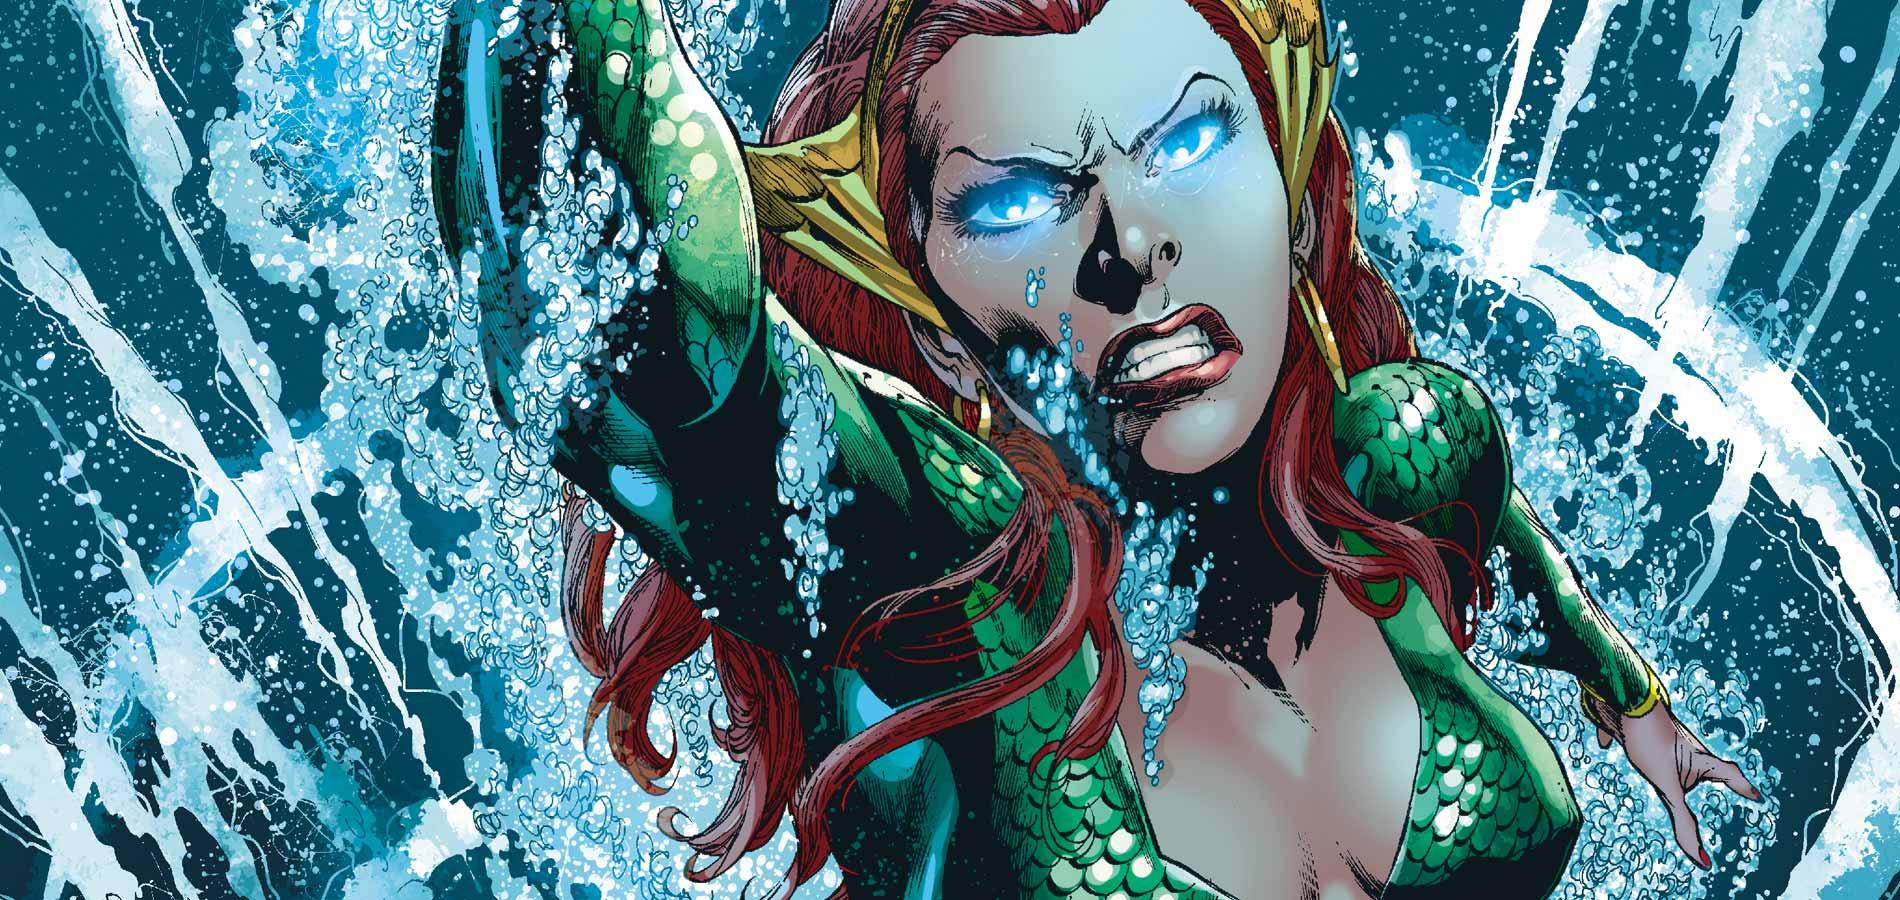 Mera in the Aquaman comics